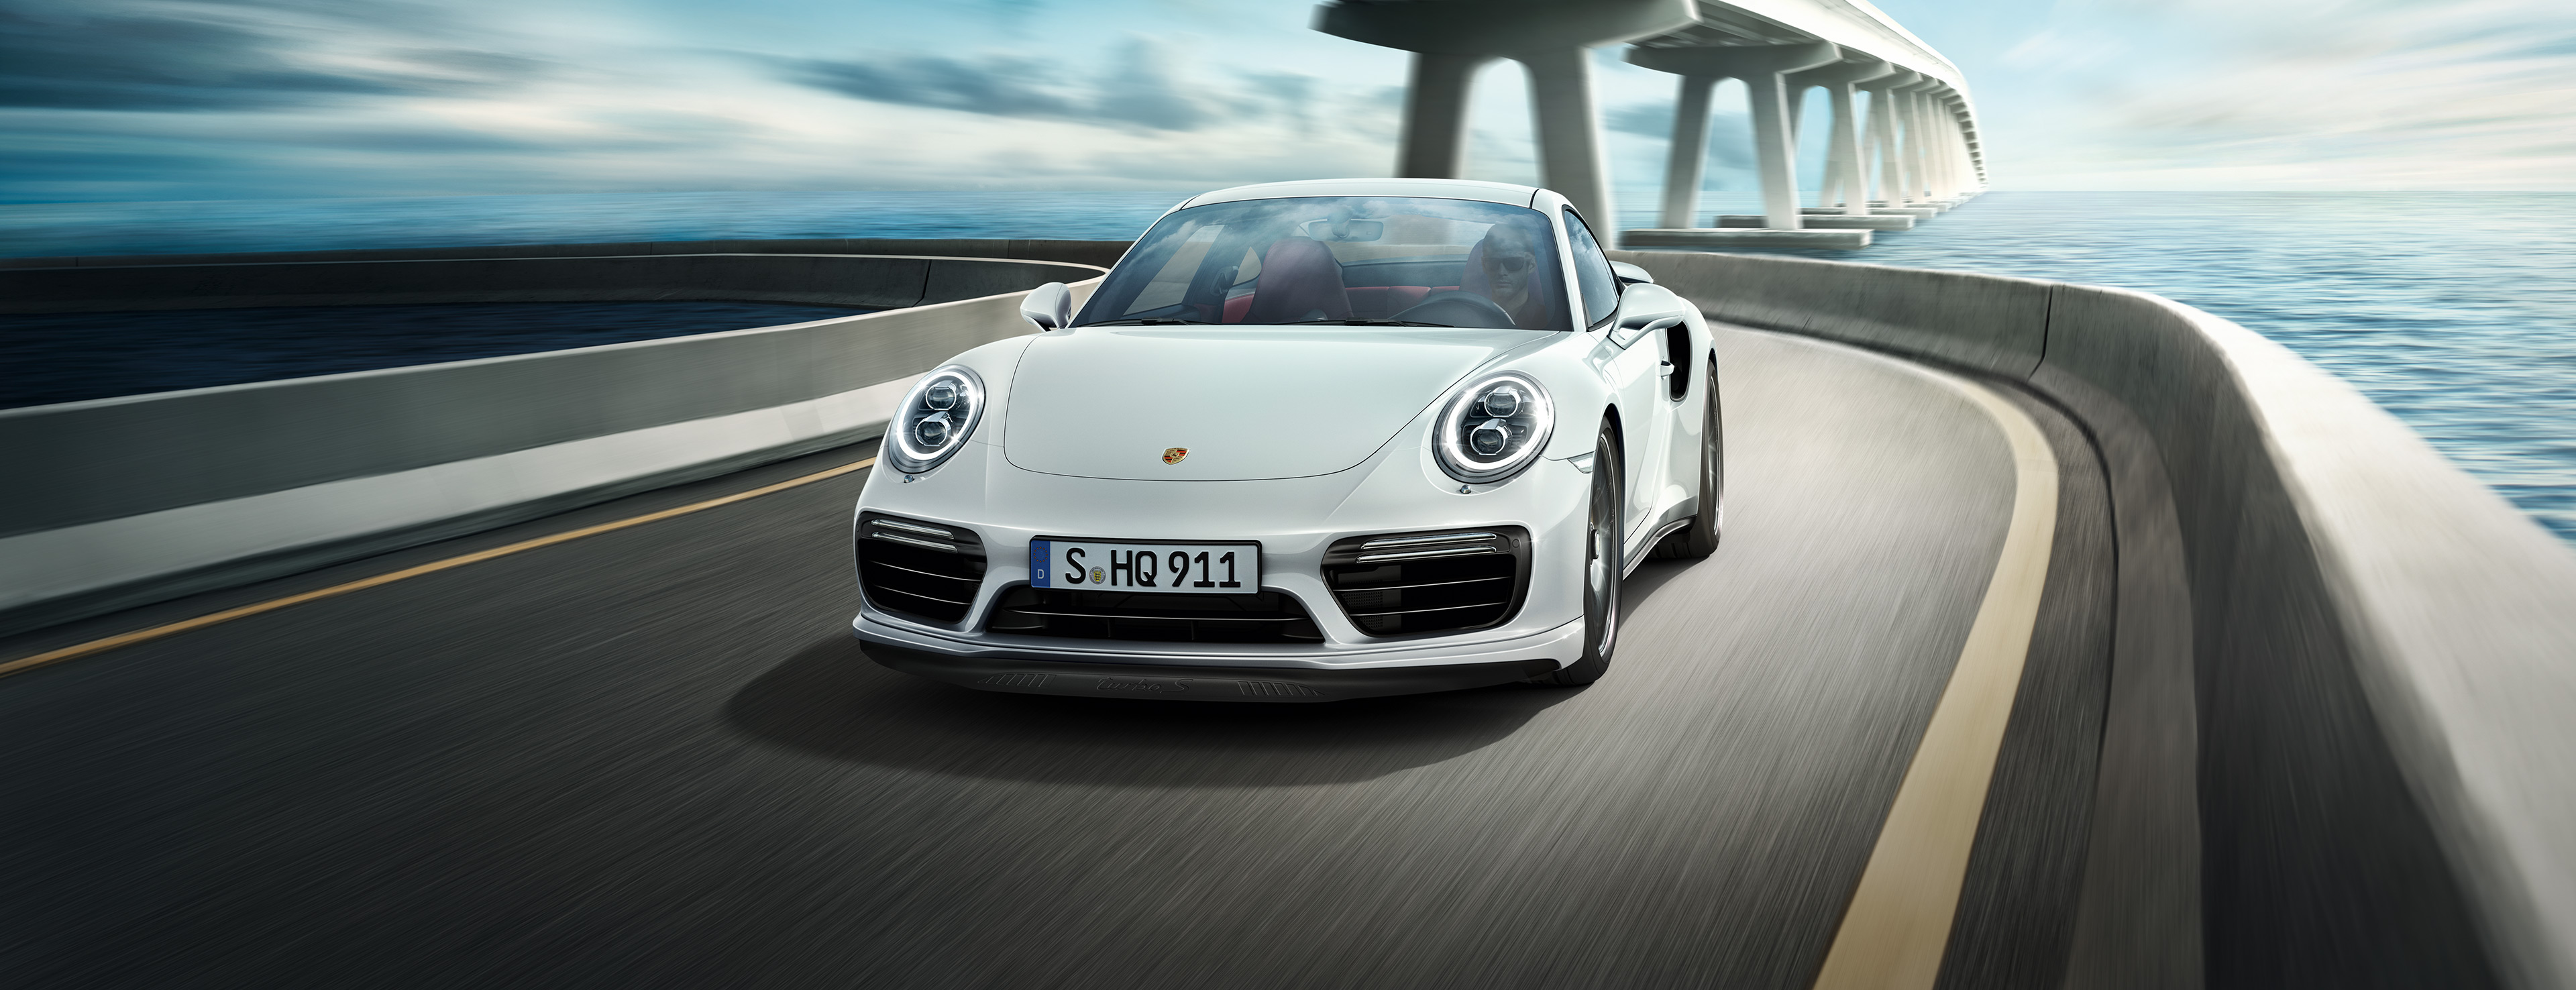 Porsche перестанет выпускать дизельные версии своих автомобилей